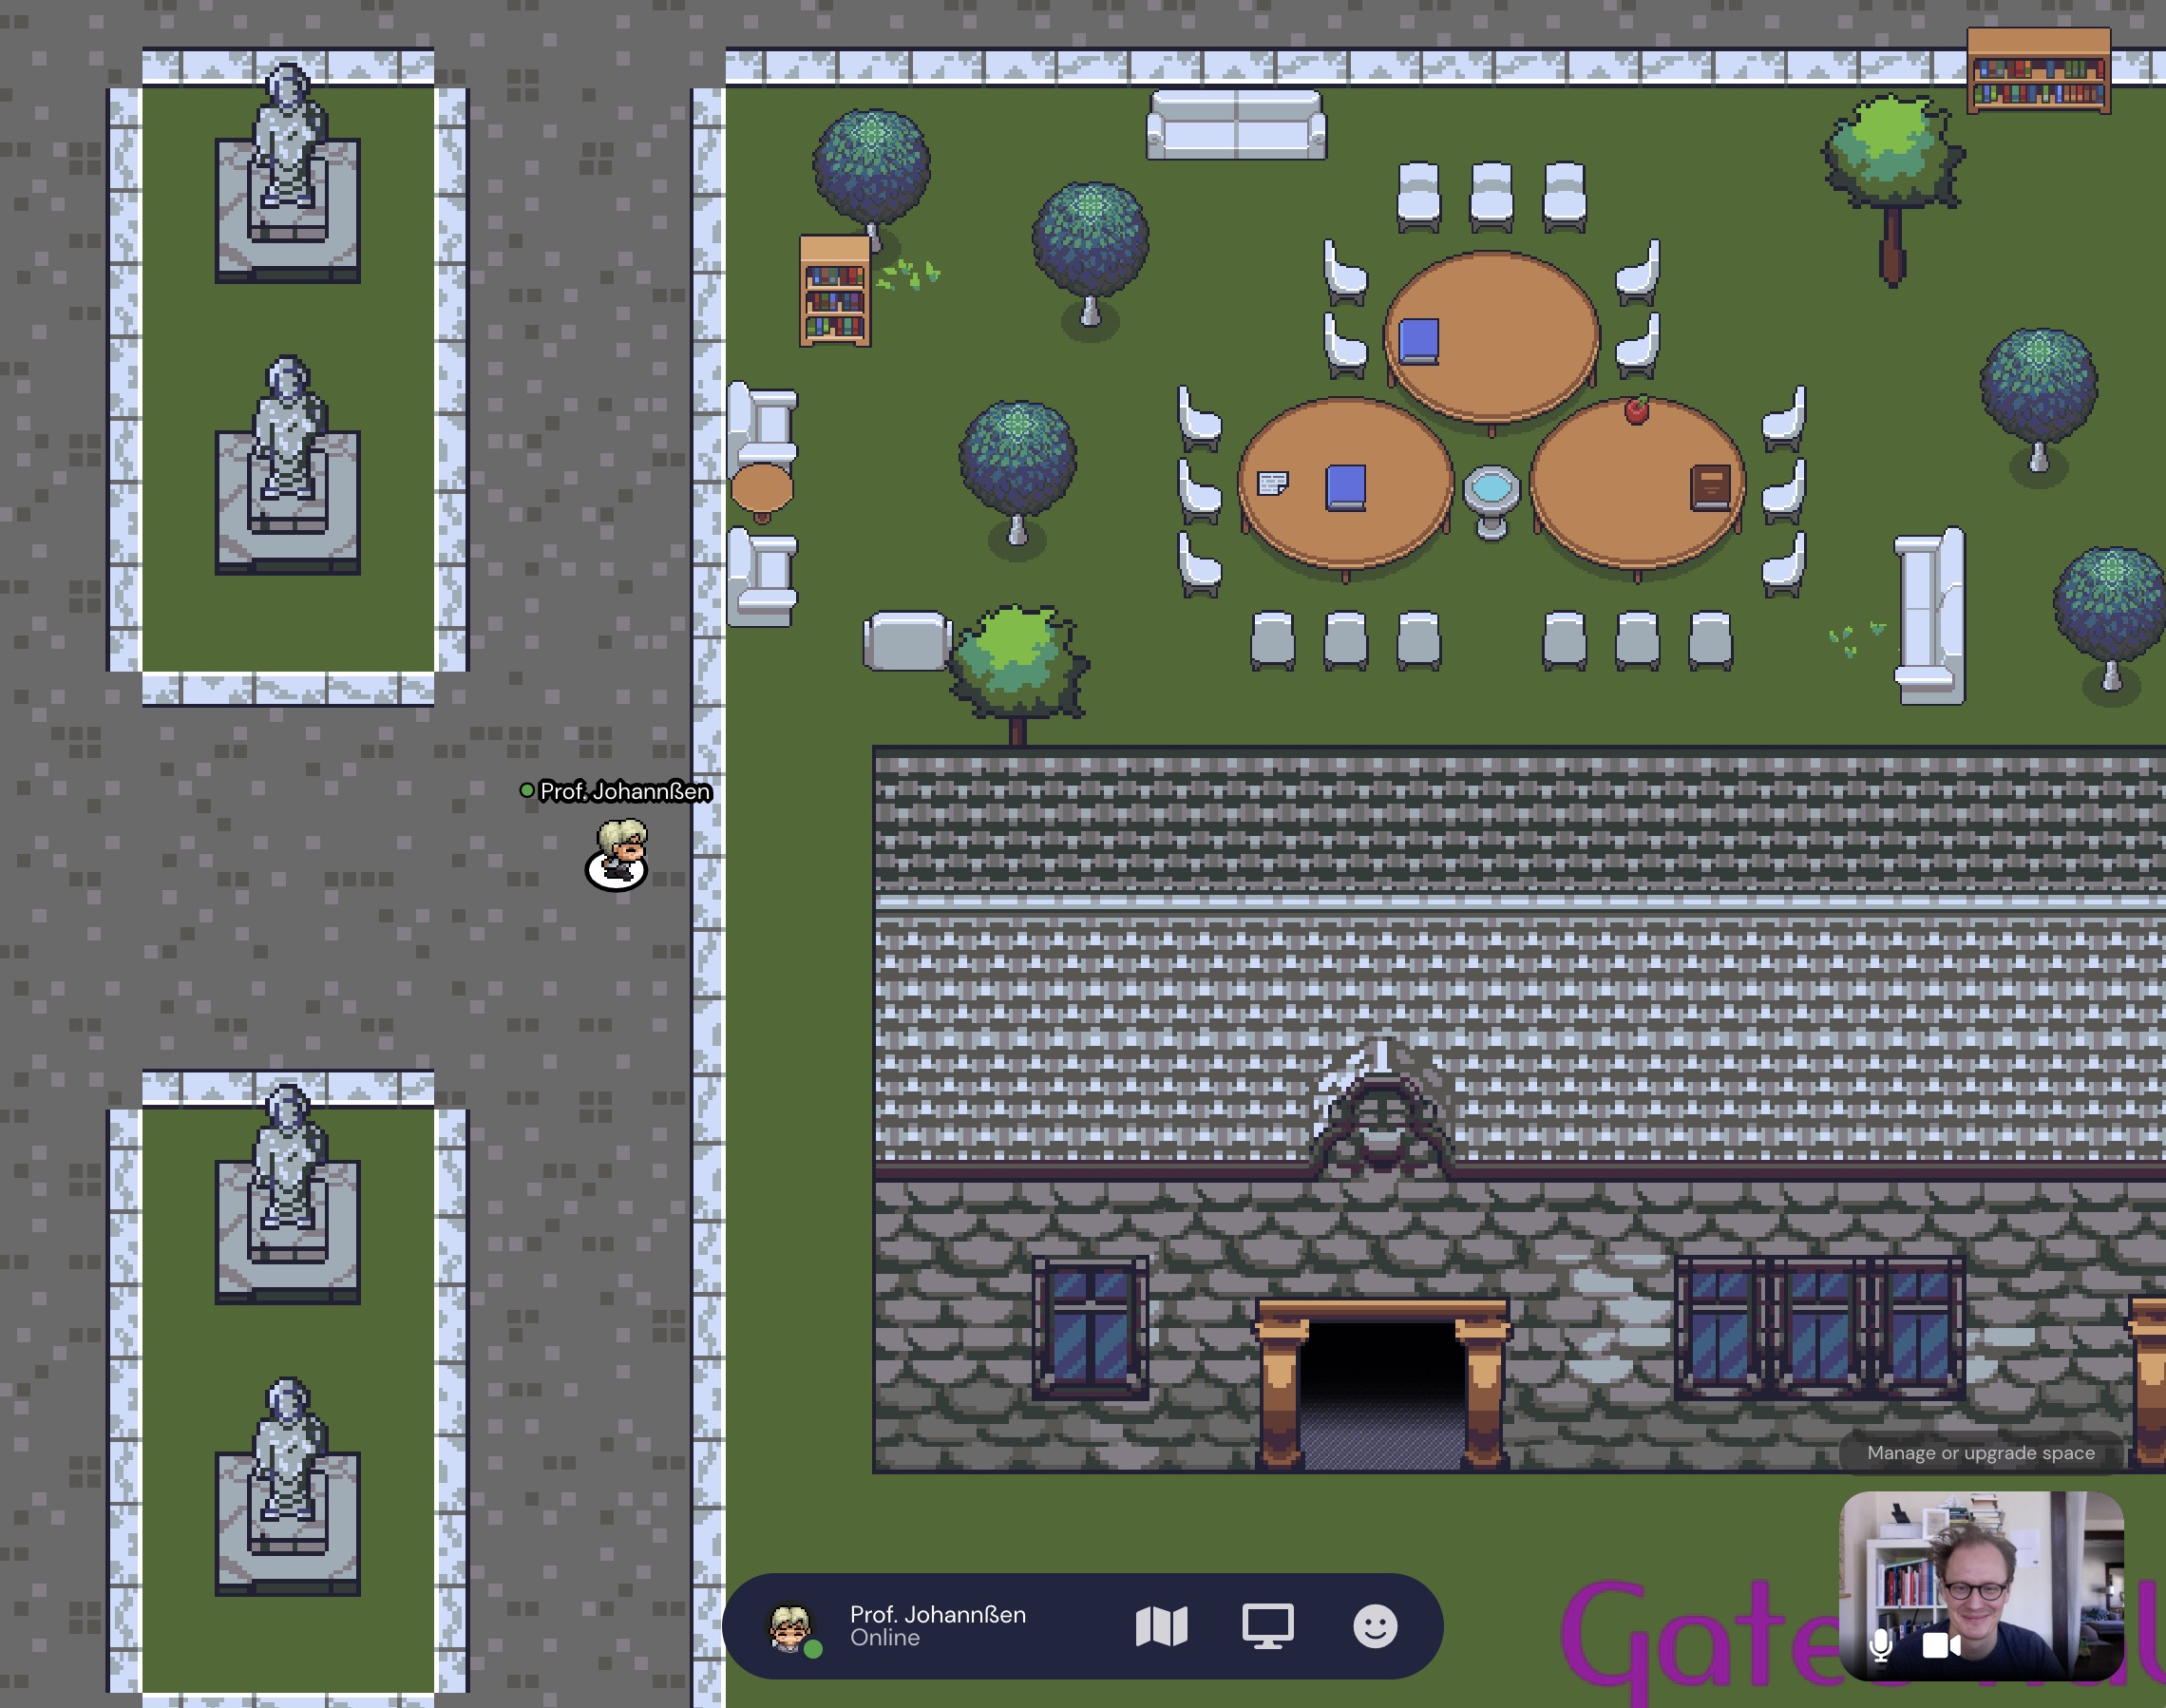 a screenshot of Professor Johannssen's virtual gather town